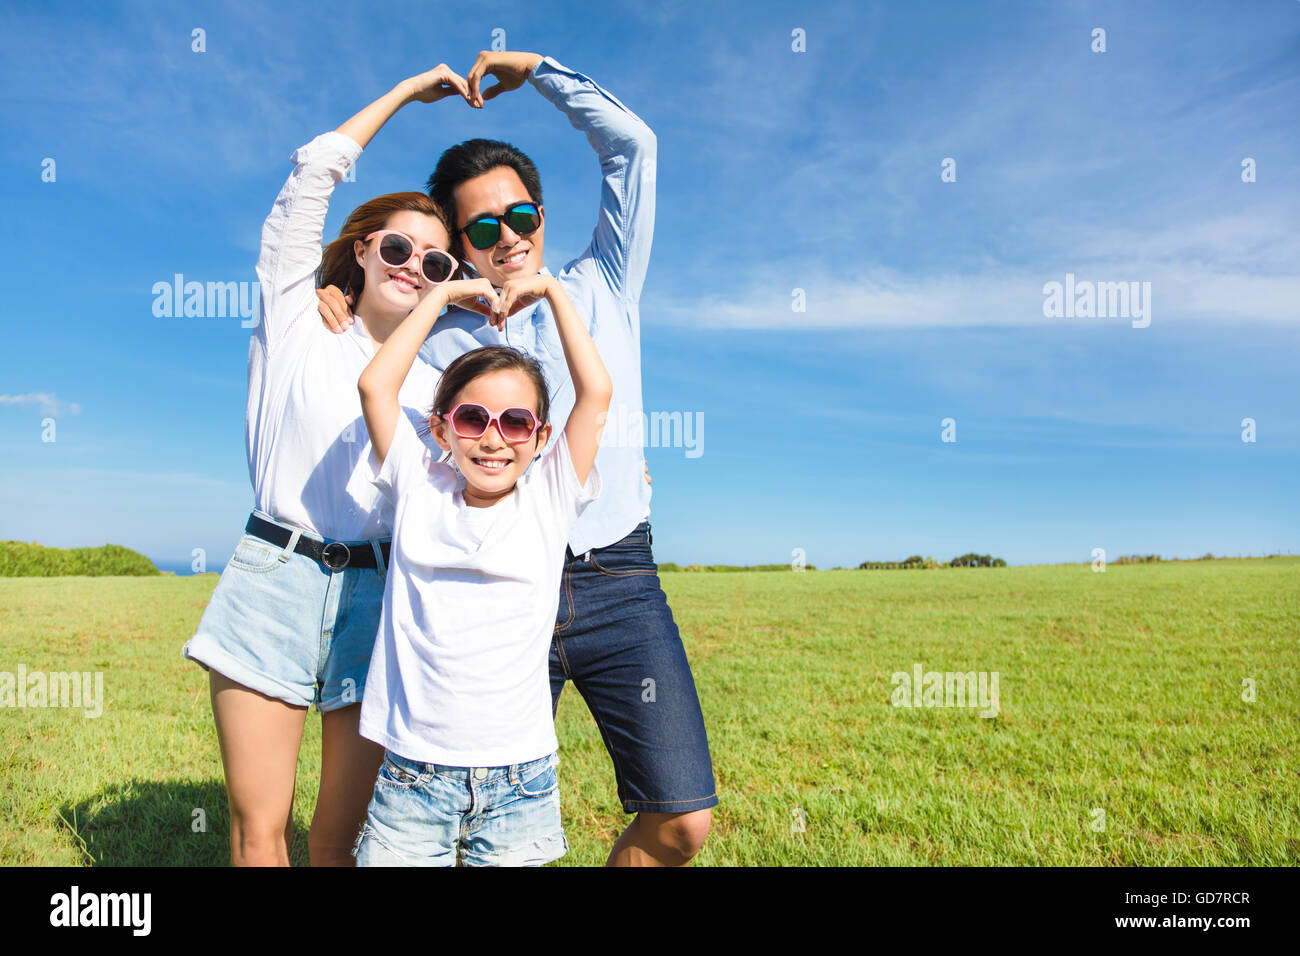 Heureux jeune famille qui font l'amour ludique forme Banque D'Images